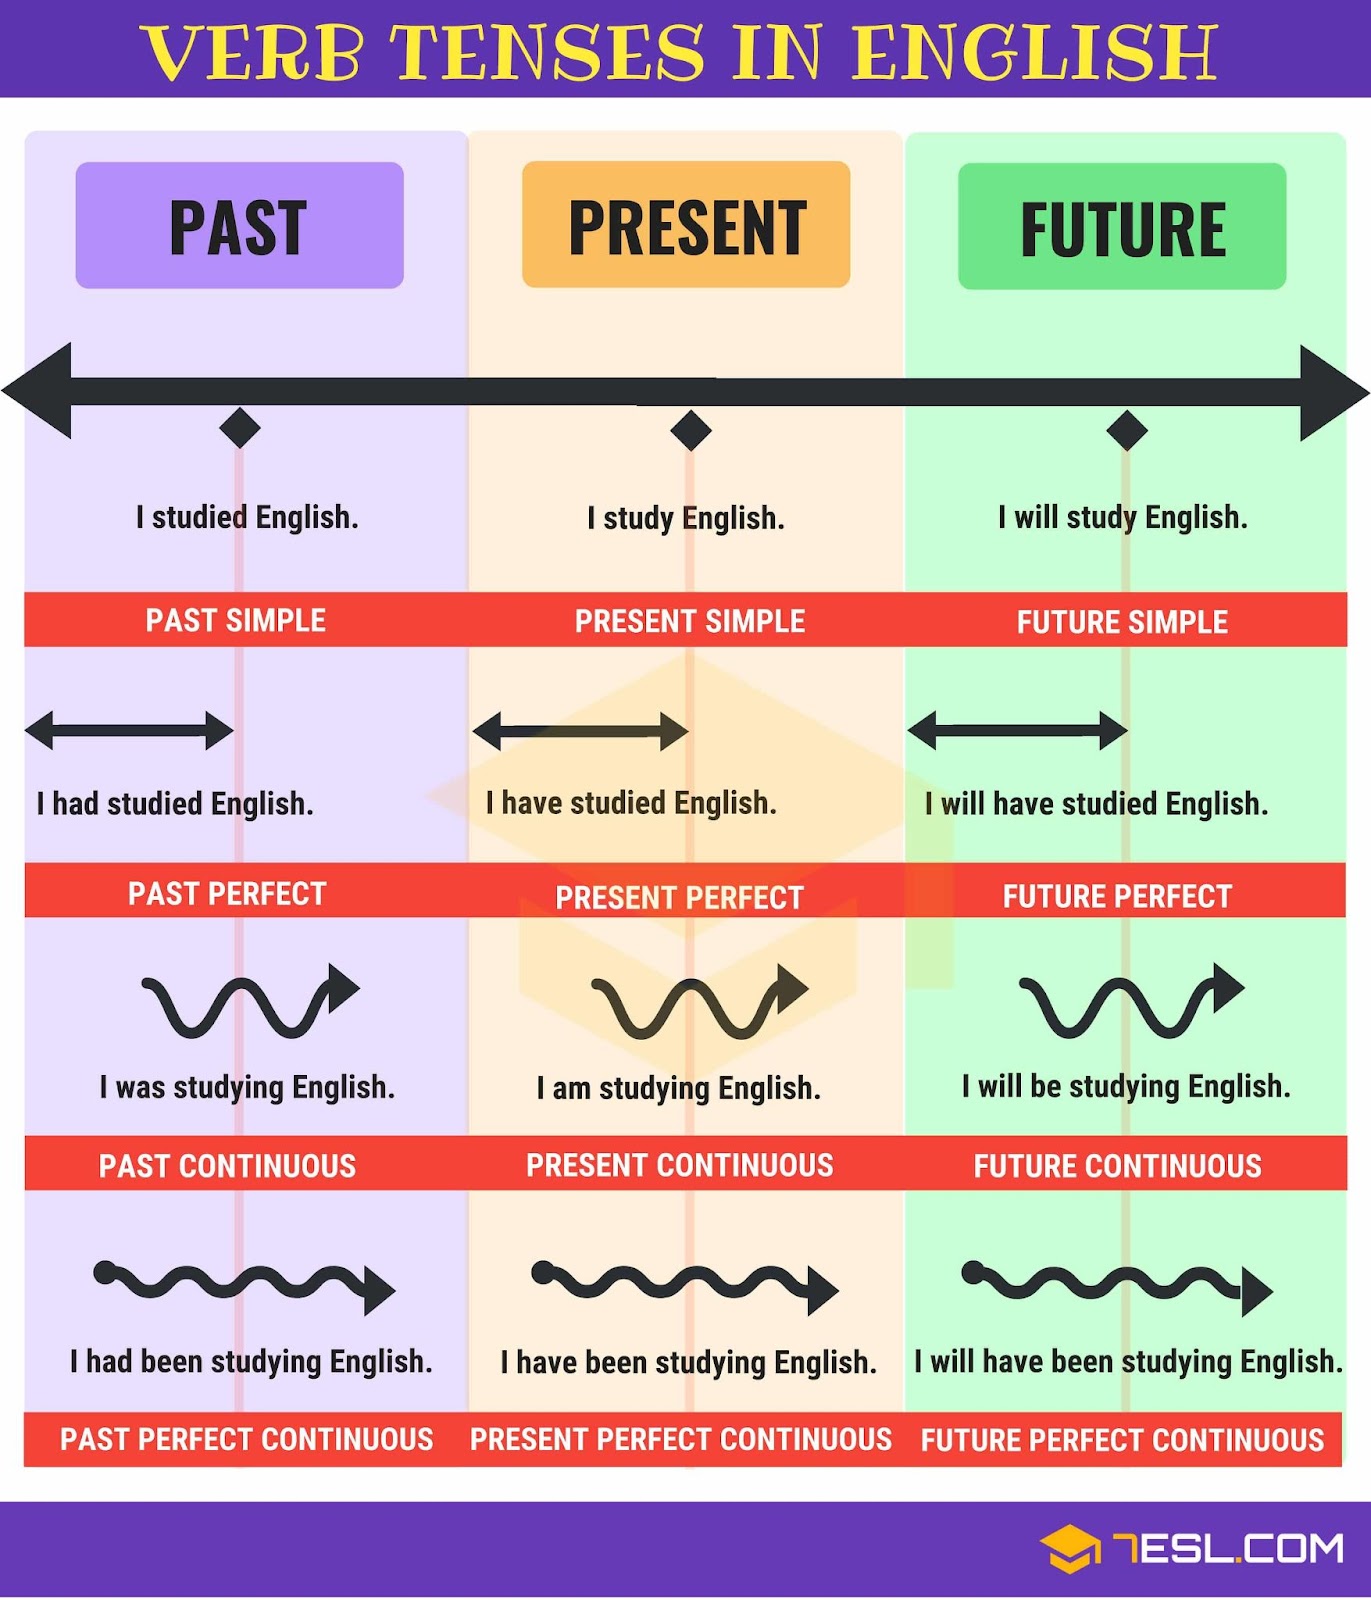 Czasy w języku angielskim - rozpoznaj je dzięki tabeli czasów